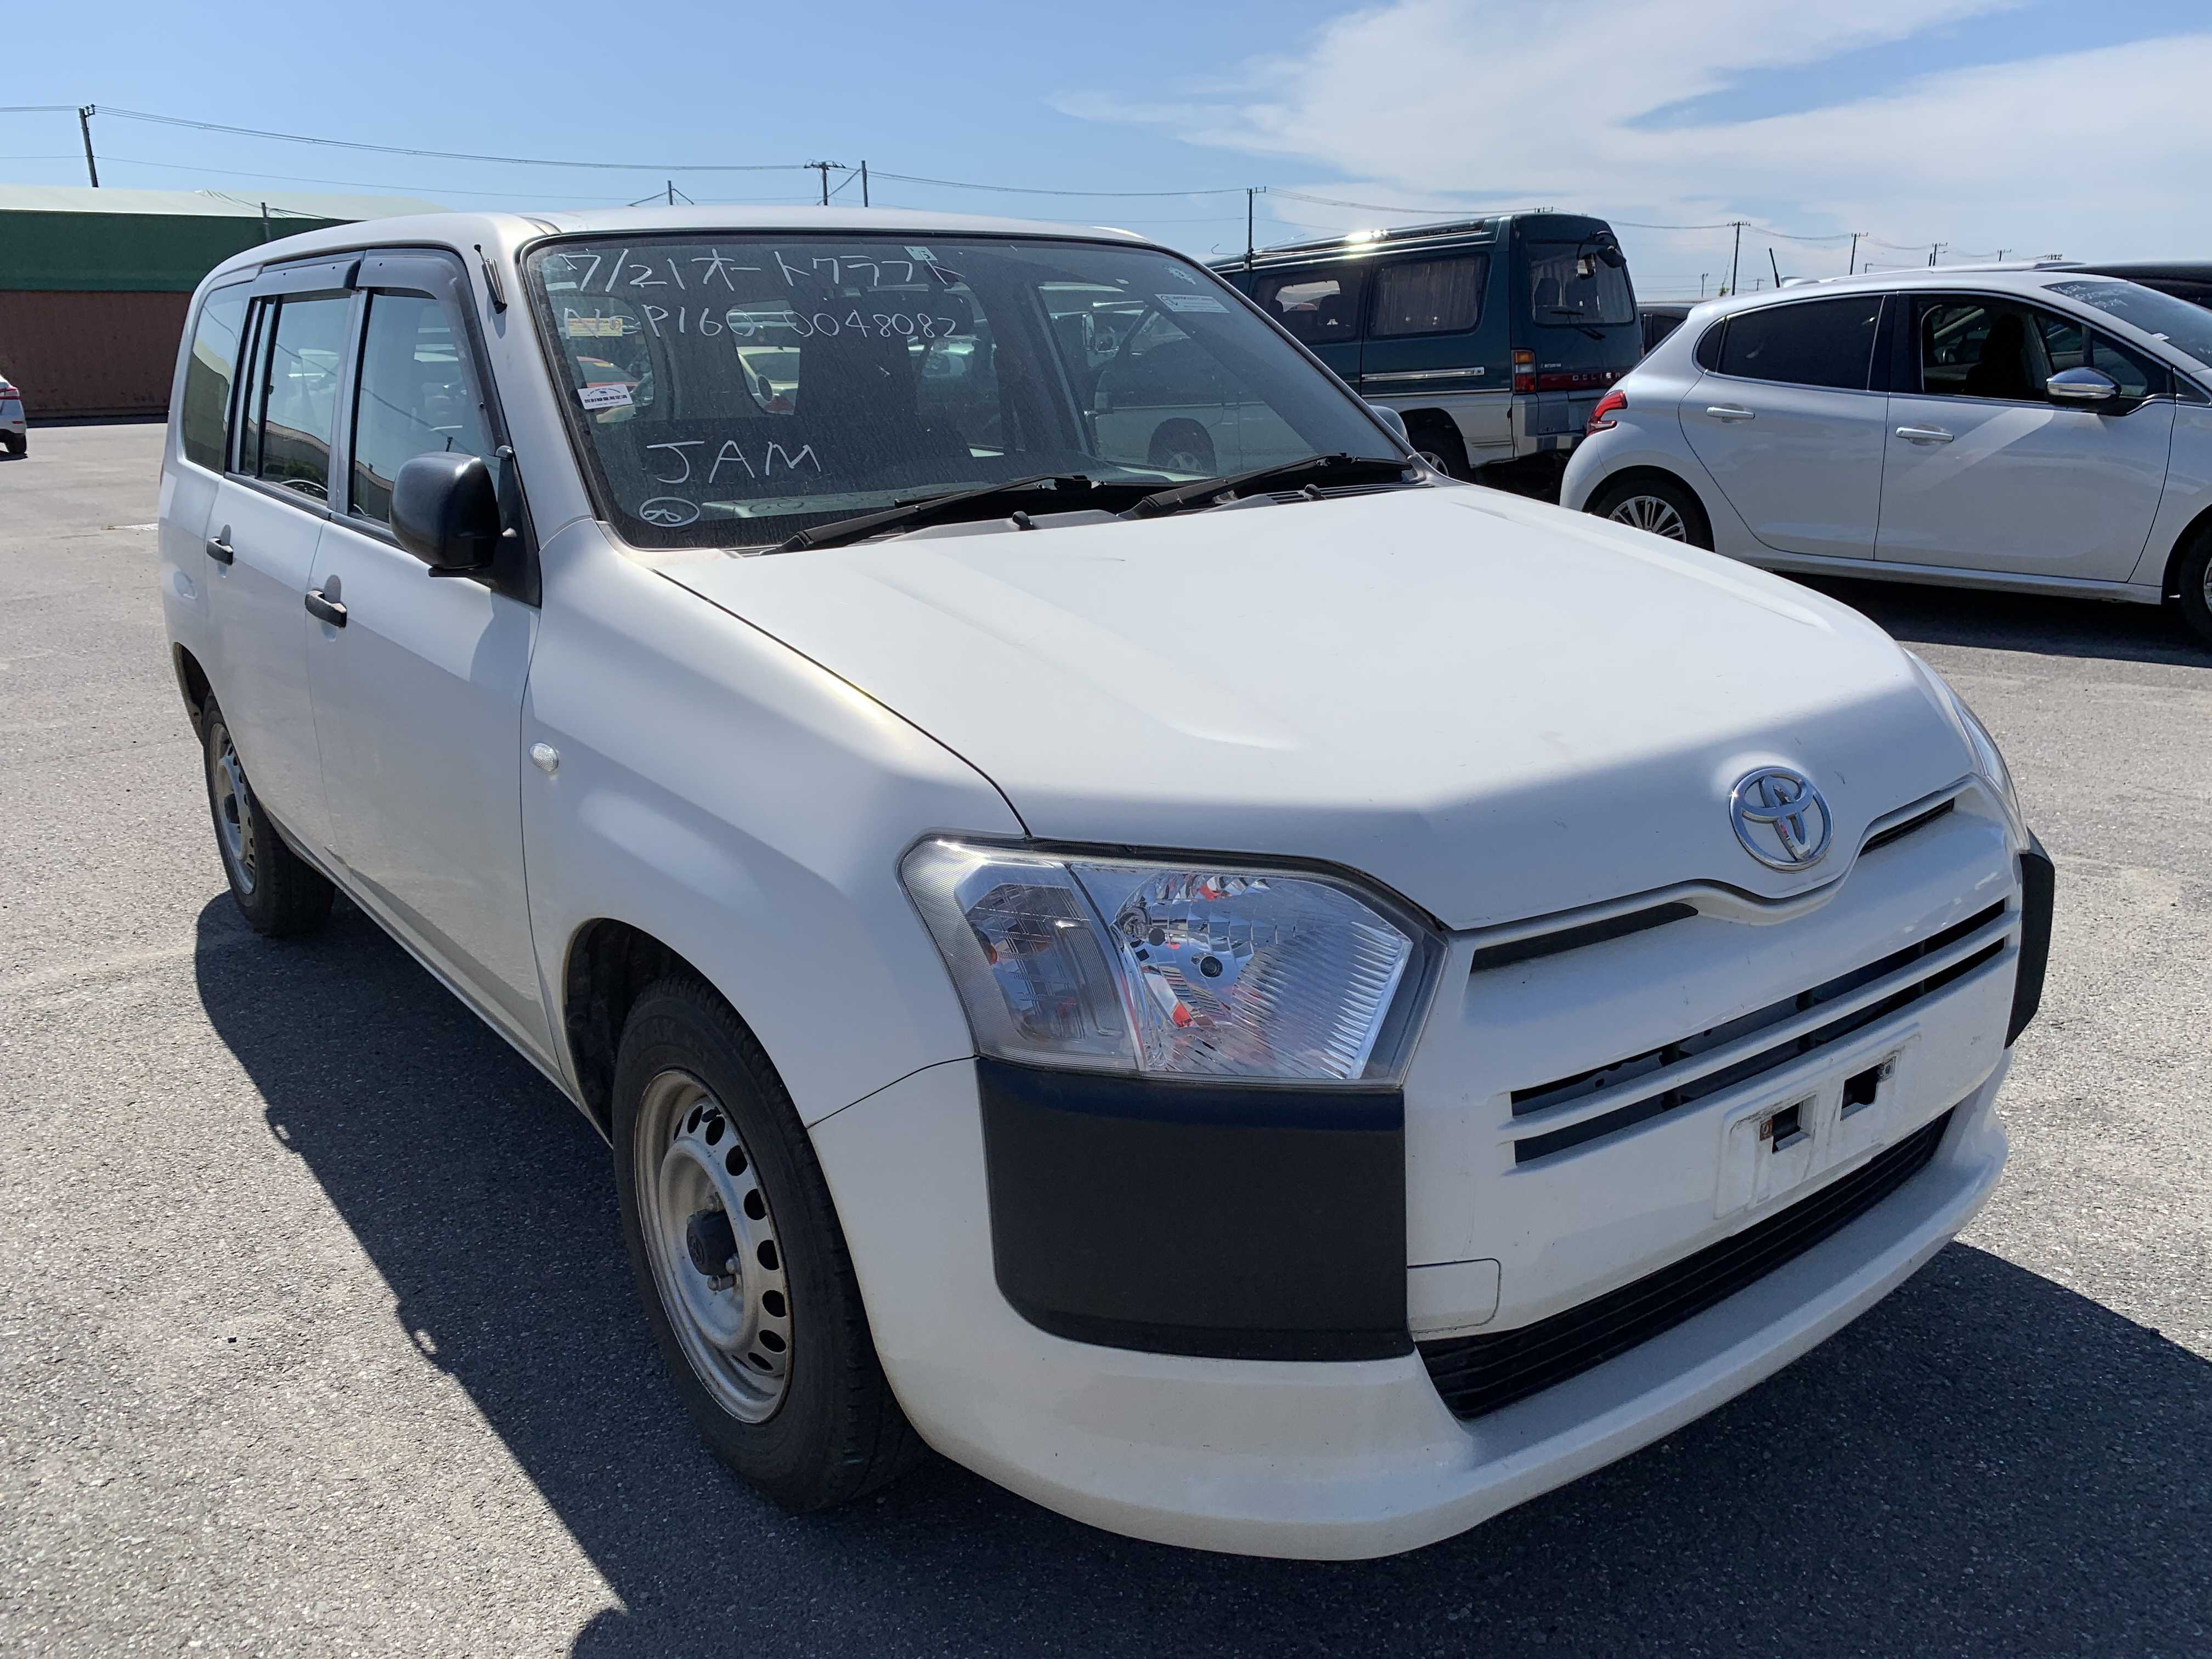 Toyota Probox 2016